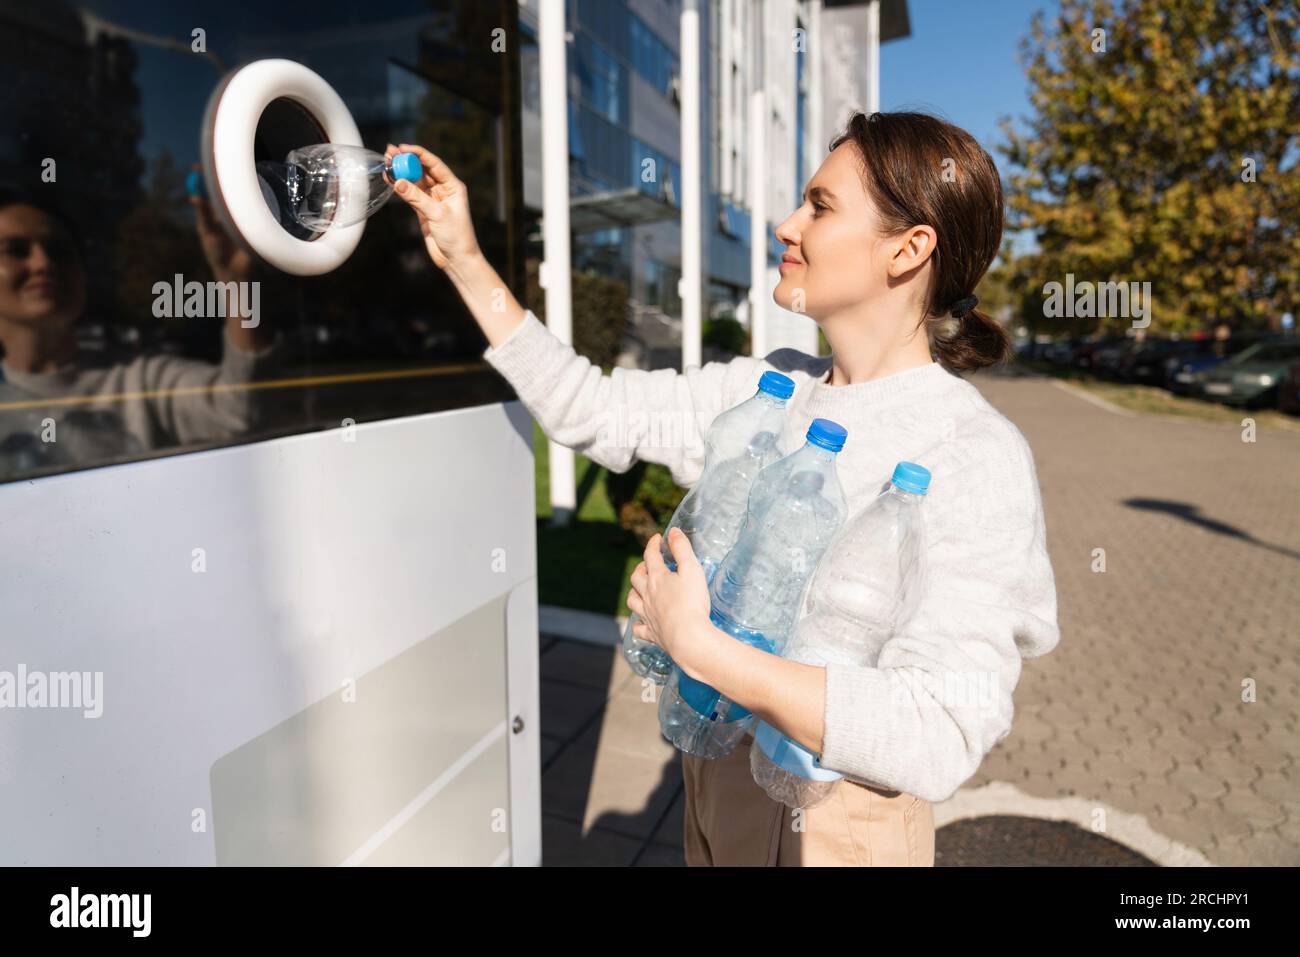 La femme utilise une machine en libre-service pour recevoir des bouteilles et des canettes en plastique usagées dans une rue de la ville. Banque D'Images